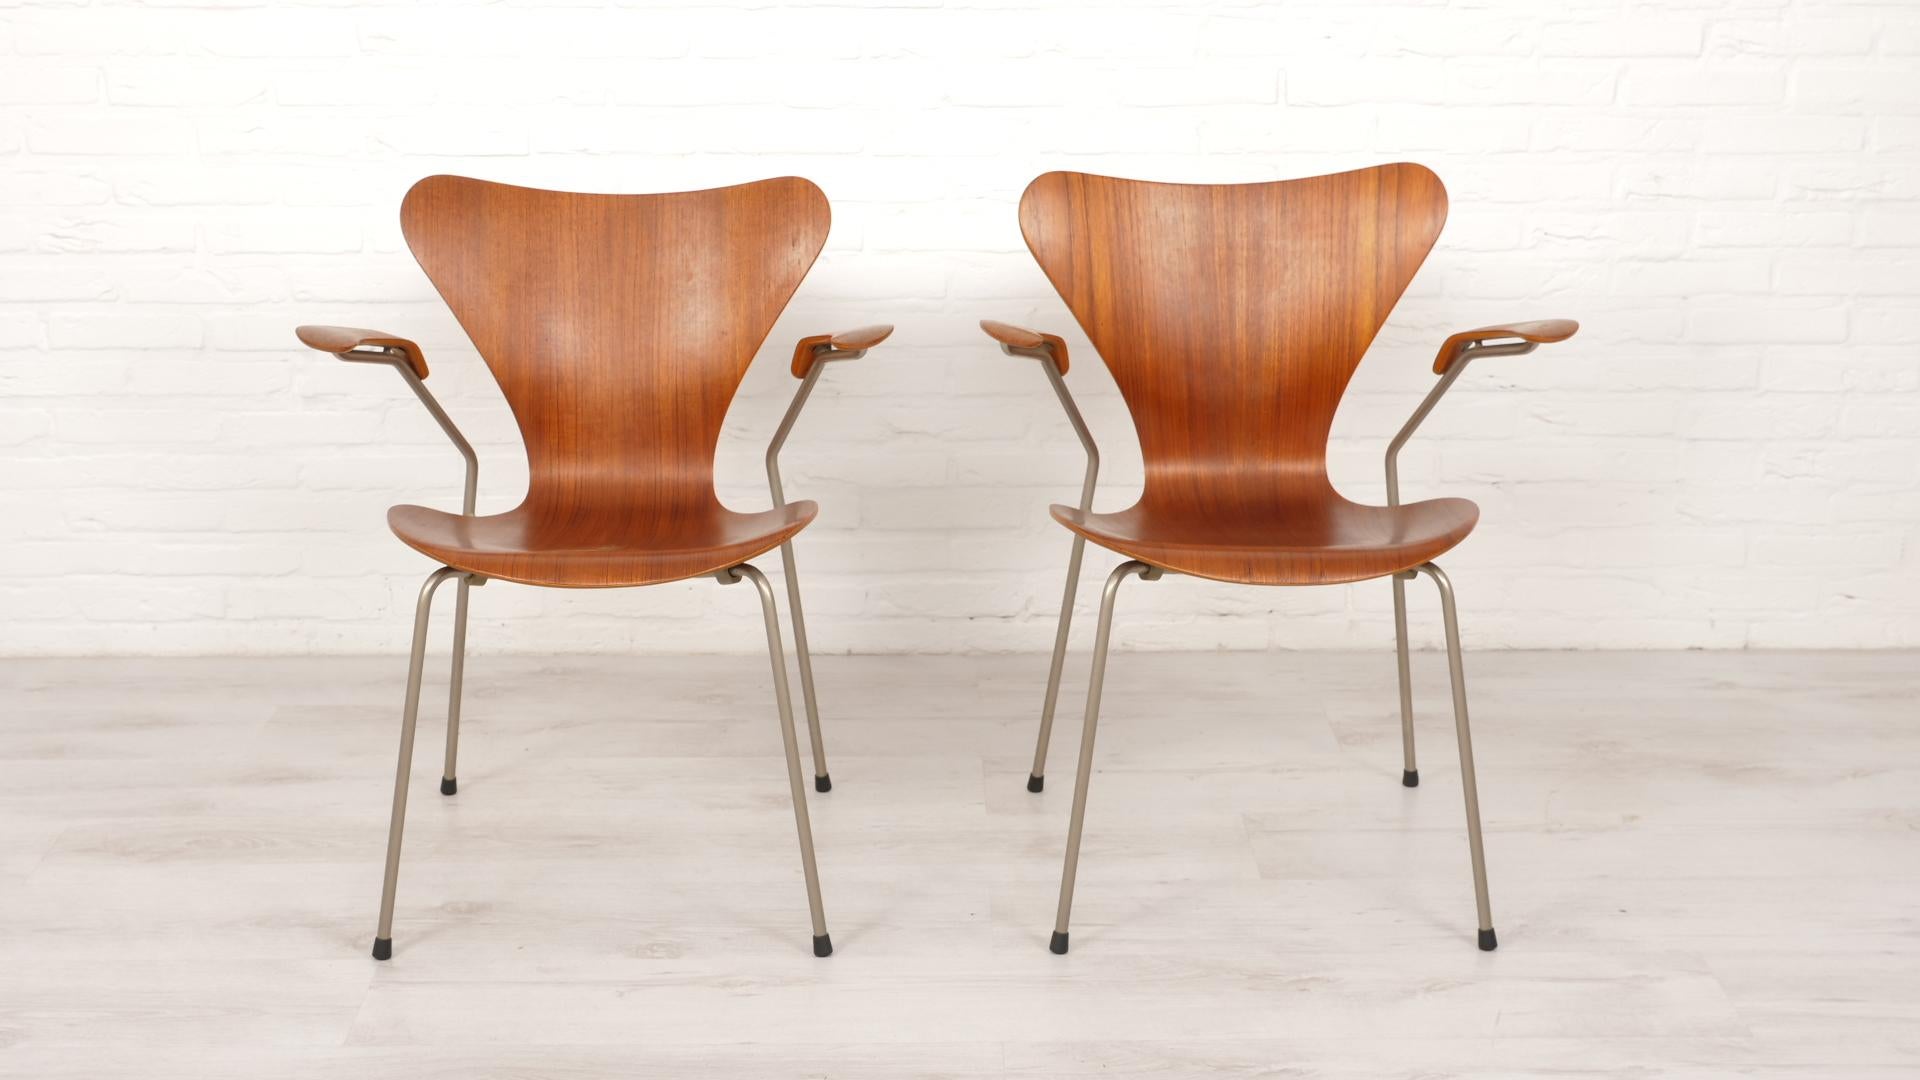 Lot de 2 magnifiques chaises papillon vintage avec accoudoir modèle 3207, conçues par Arne Jacobsen pour Fritz Hansen. Cet ensemble est en teck et est une première édition.

Période de conception : 1950 - 1960
Style : Mid-century modern - Danish